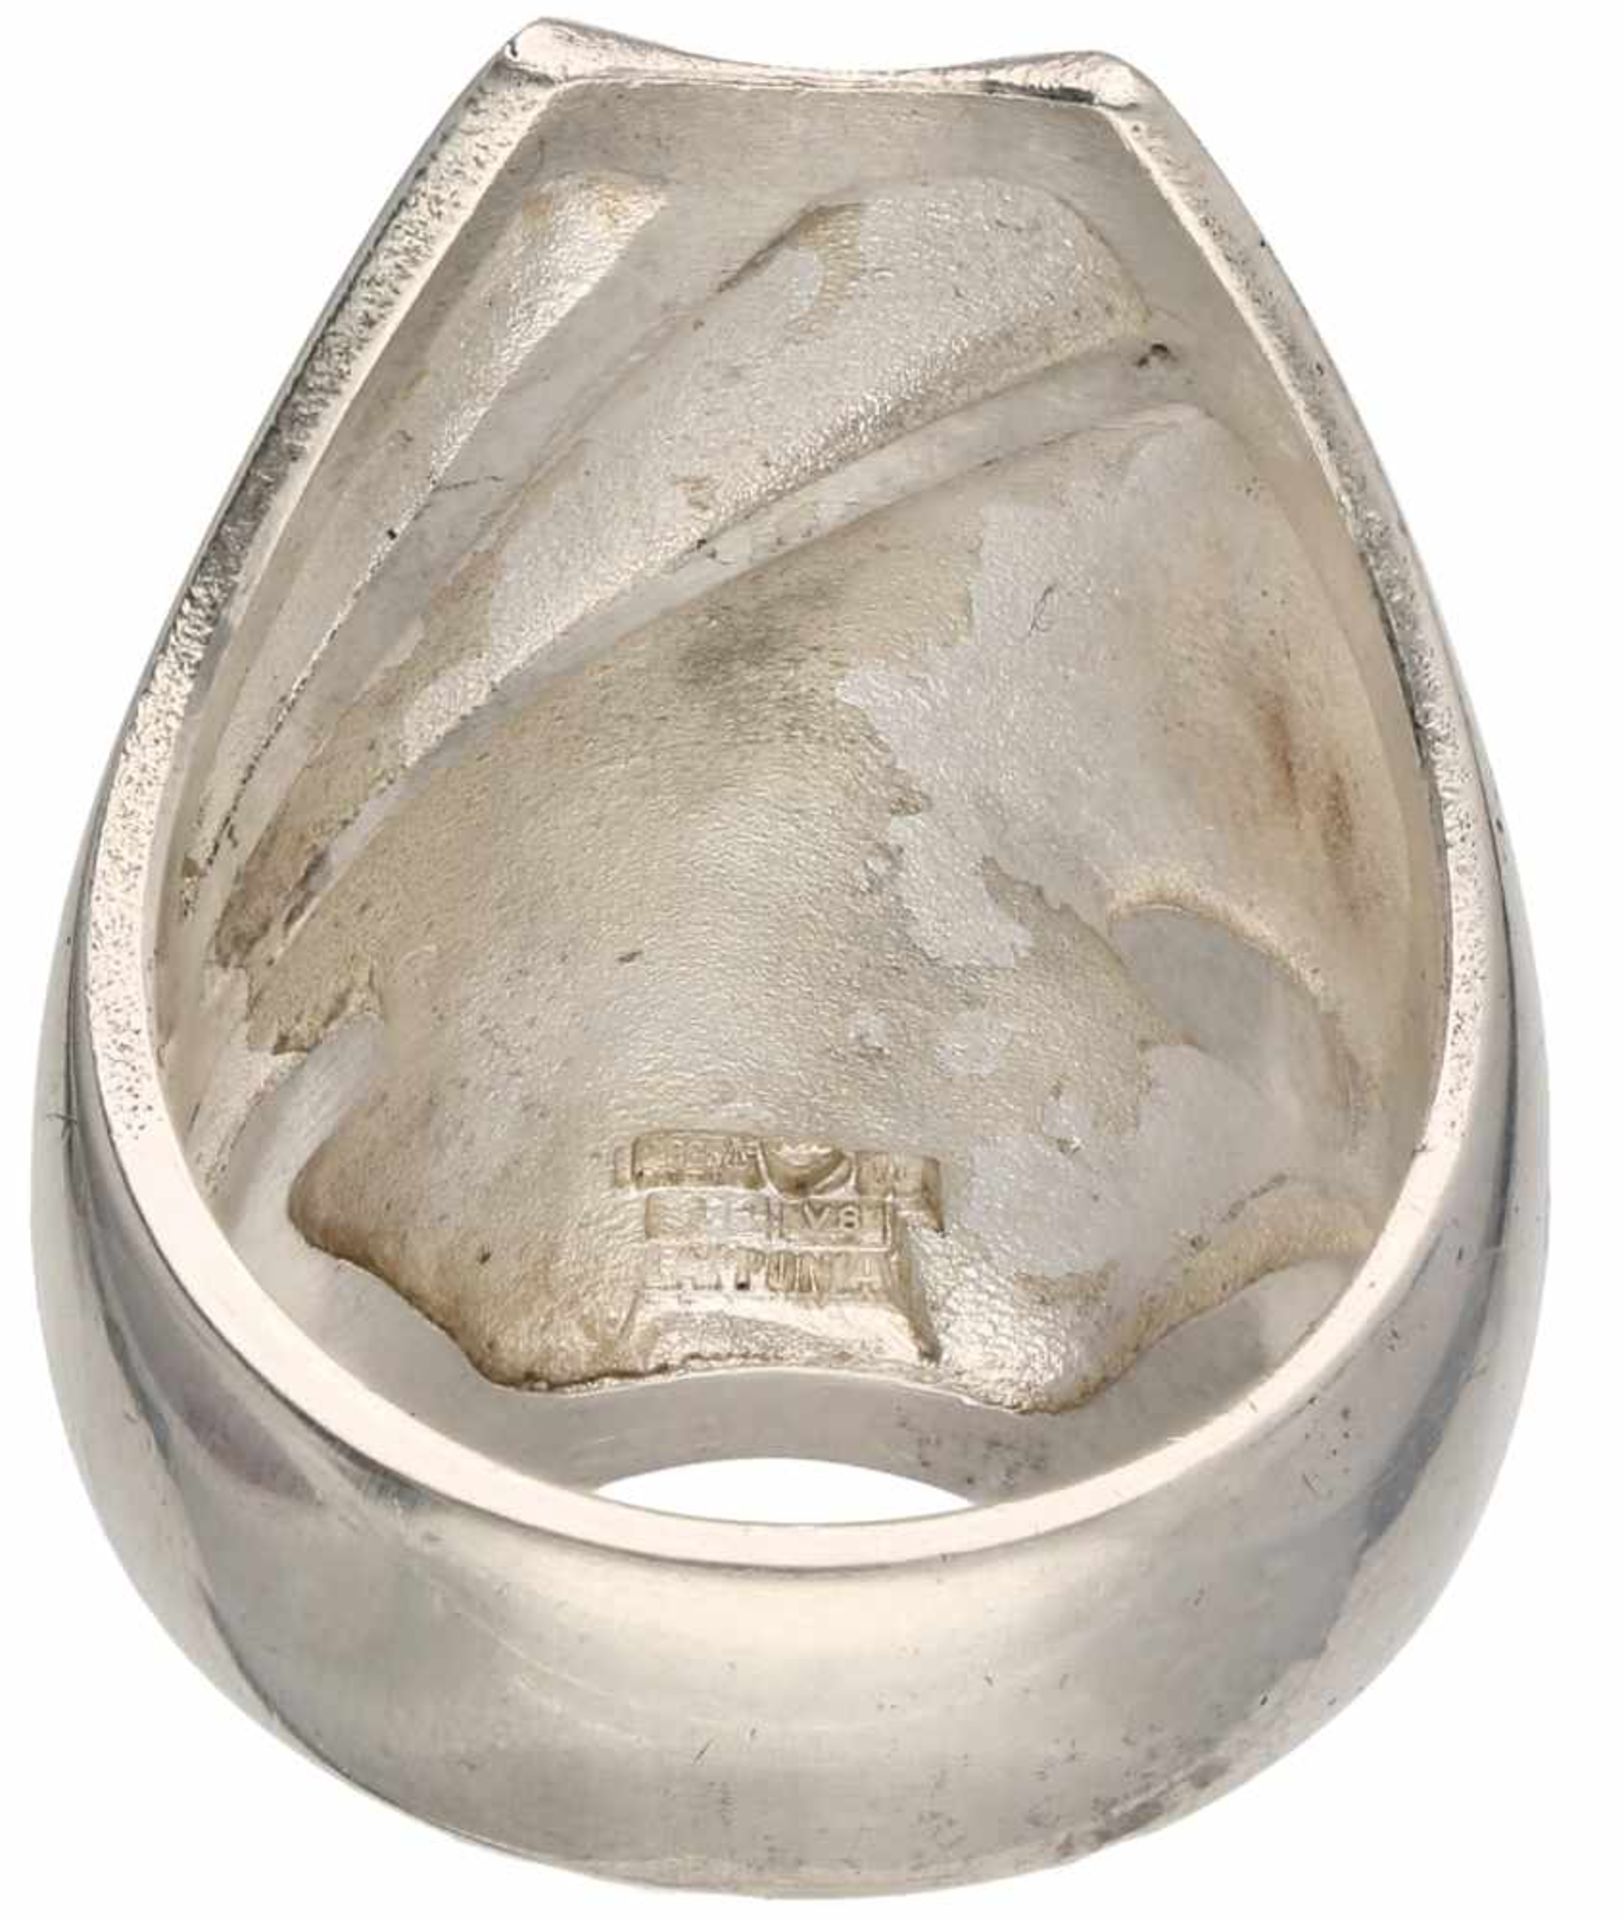 Zilveren Lapponia ring - 925/1000.Designer: Björn Weckström, 1998. Ringmaat: 17 mm. Gewicht: 11,8 - Bild 2 aus 3